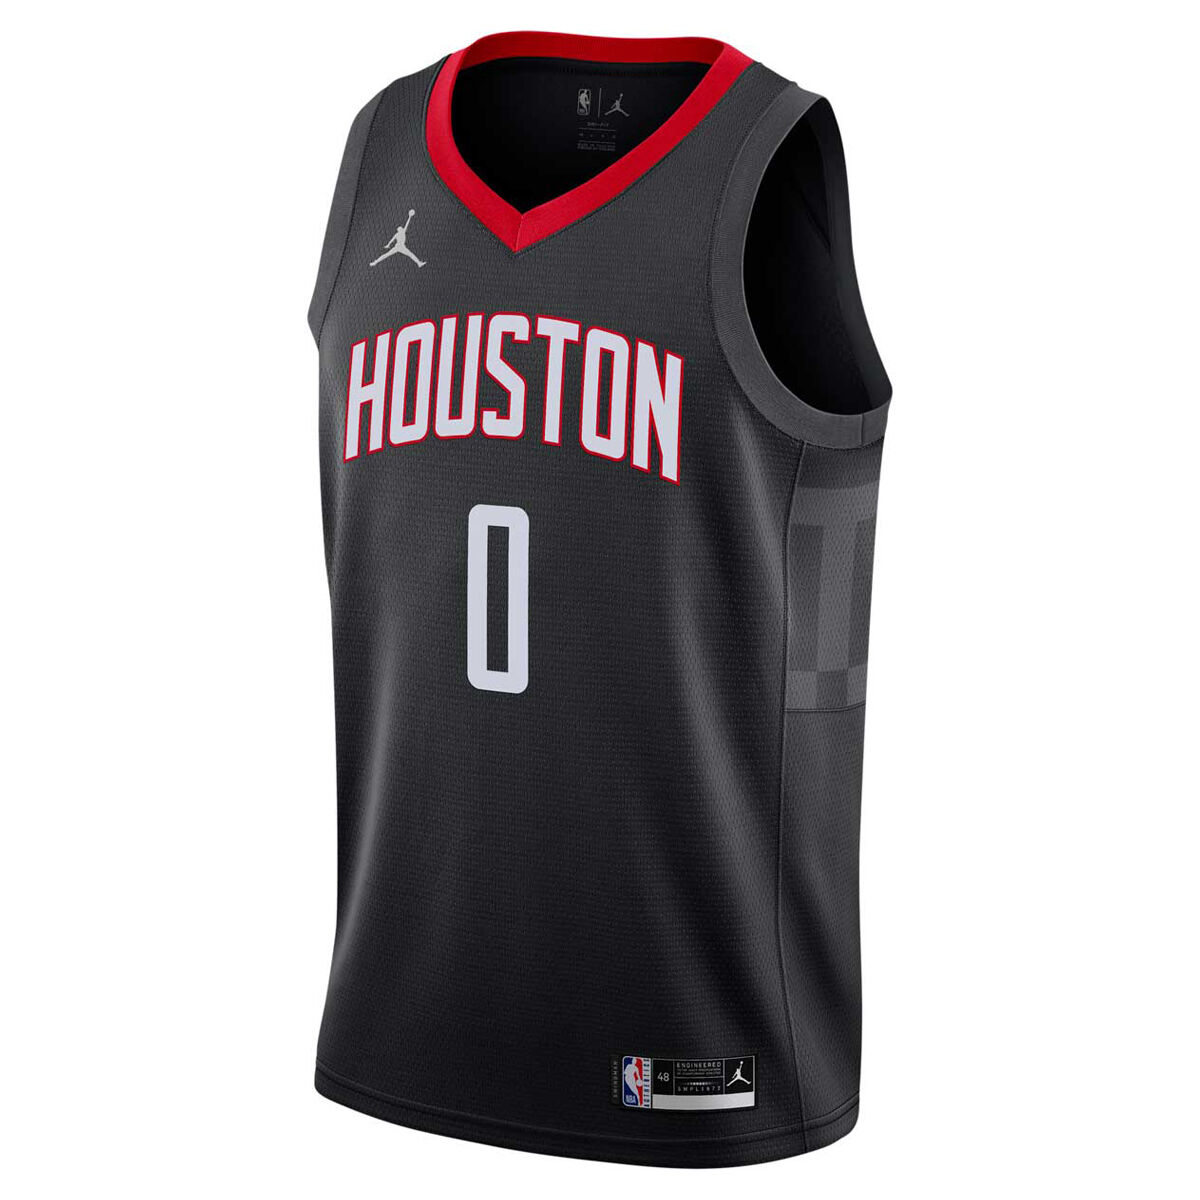 Houston Rockets Russel Westbrook Jersey Oilers Size Xl Nike